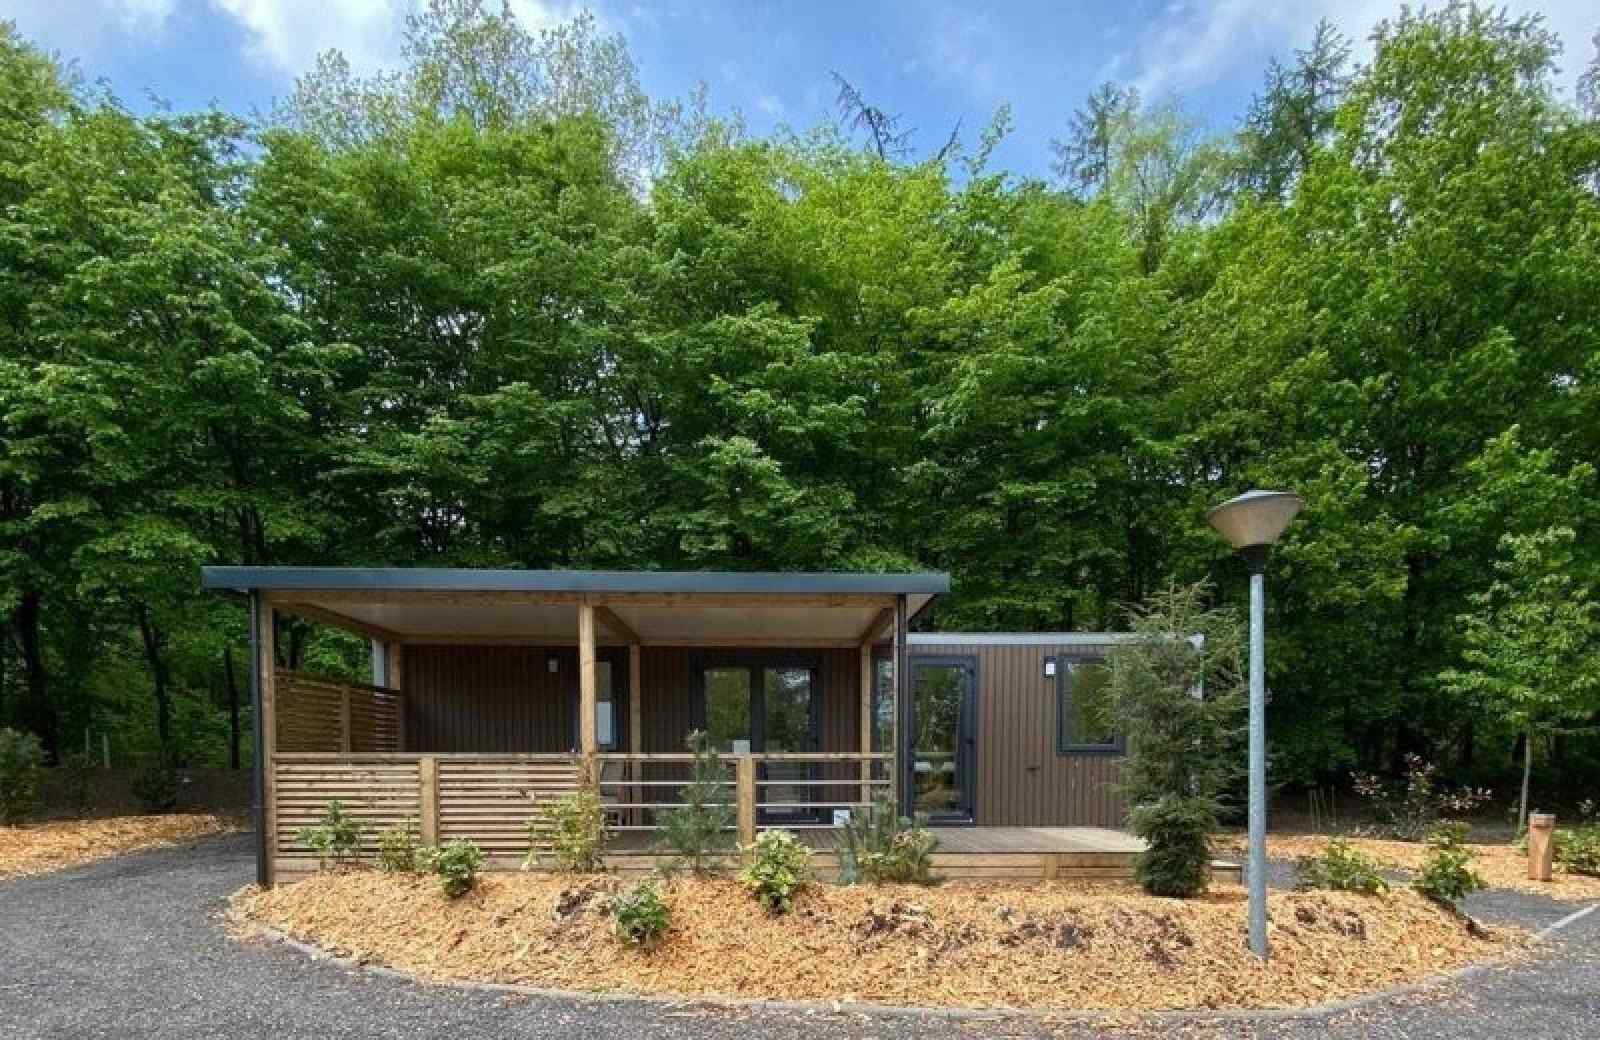 Luxe zespersoons family Cottage in een prachtige omgeving - Nederland - Europa - Rhenen